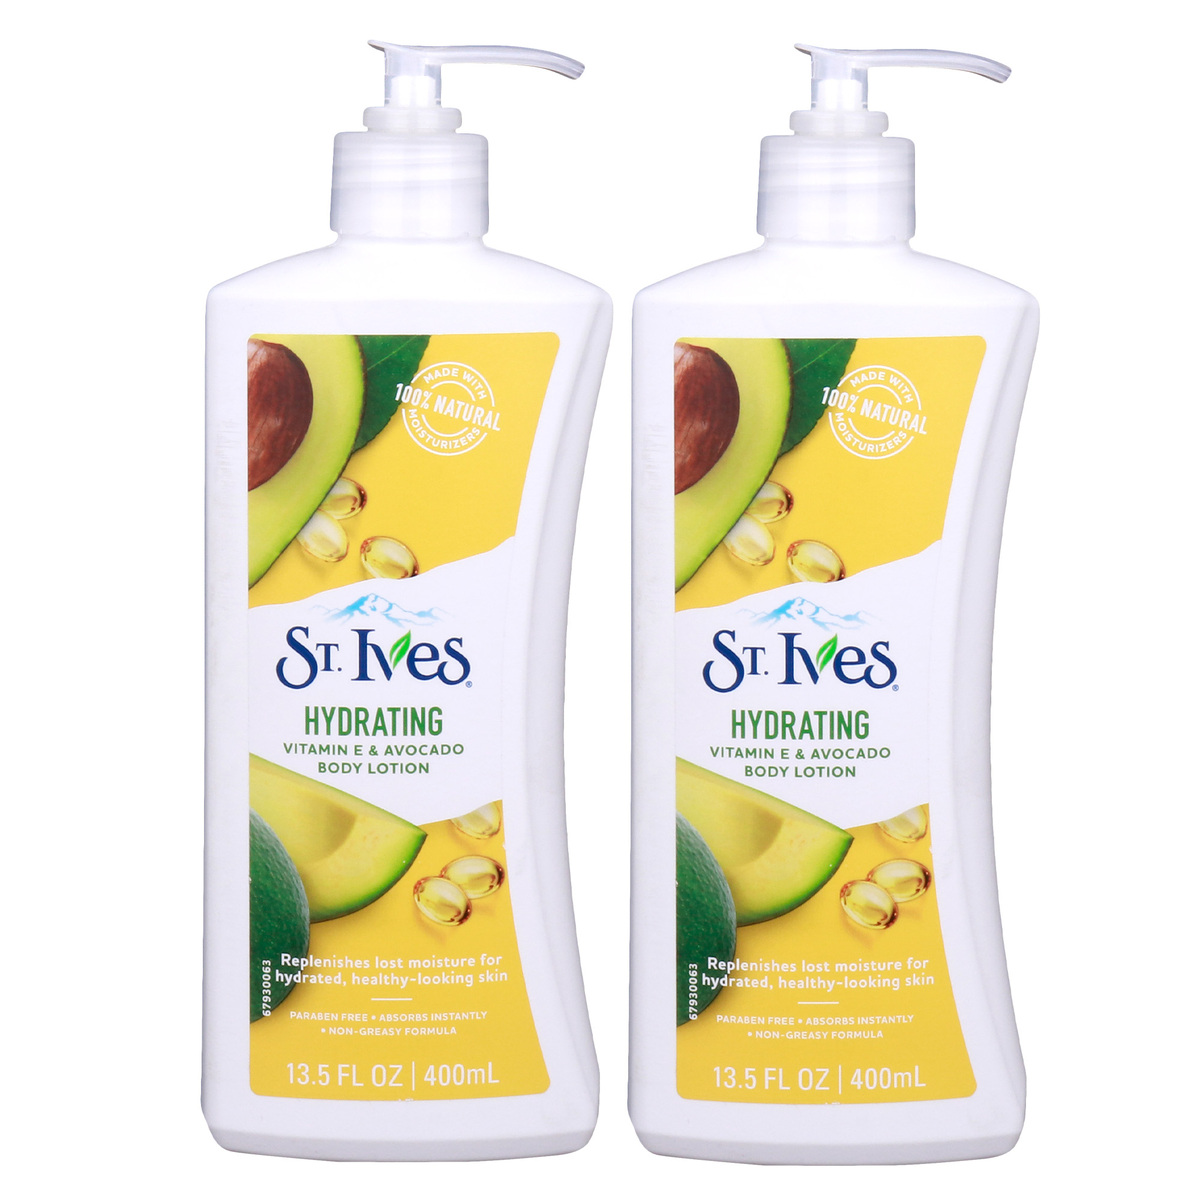 St. Ives Vitamin E & Avocado Hydrating Body Lotion, 400 ml 1+1